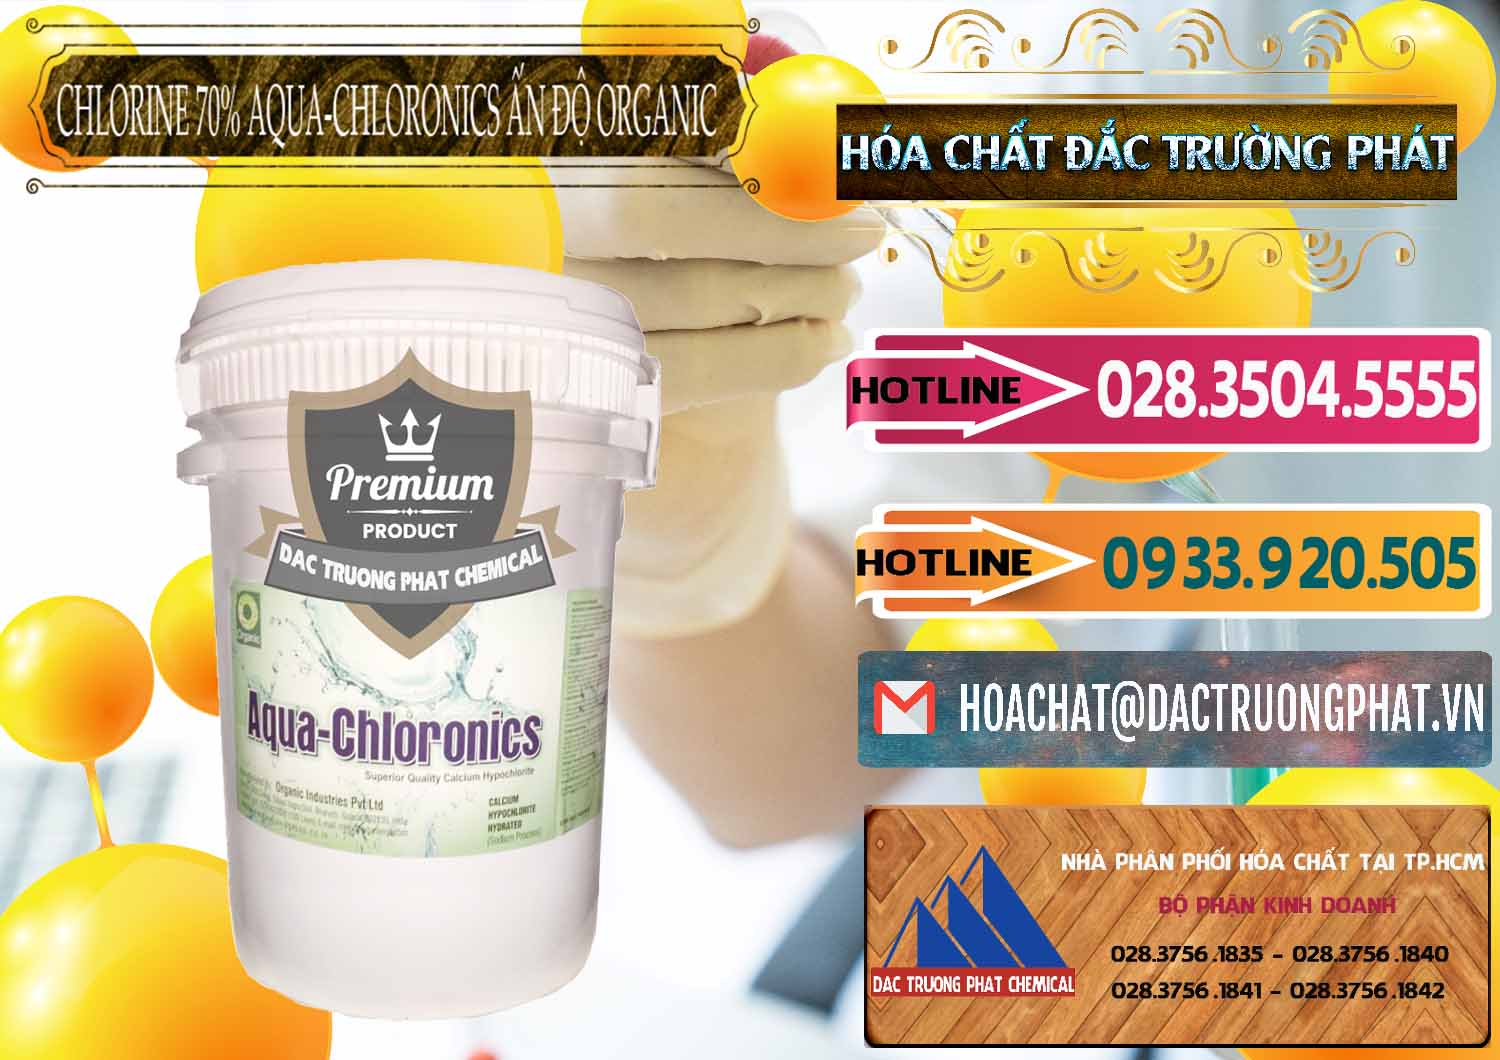 Nơi chuyên bán & cung cấp Chlorine – Clorin 70% Aqua-Chloronics Ấn Độ Organic India - 0211 - Cty cung cấp & nhập khẩu hóa chất tại TP.HCM - dactruongphat.vn